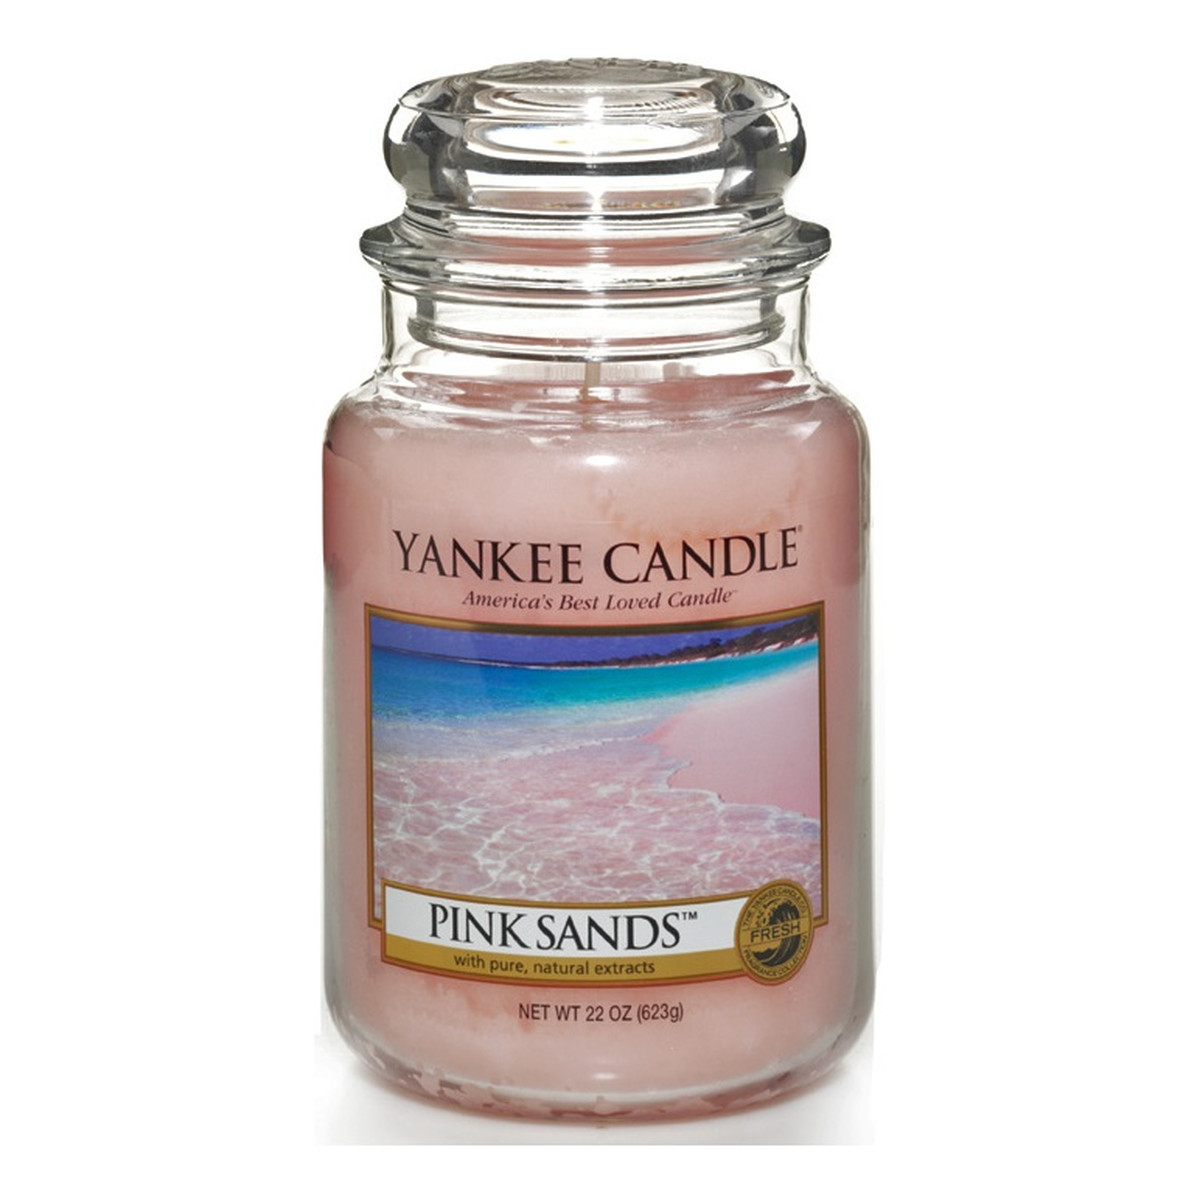 Yankee Candle Large Jar Świeca zapachowa duży słój Pink Sands 623g